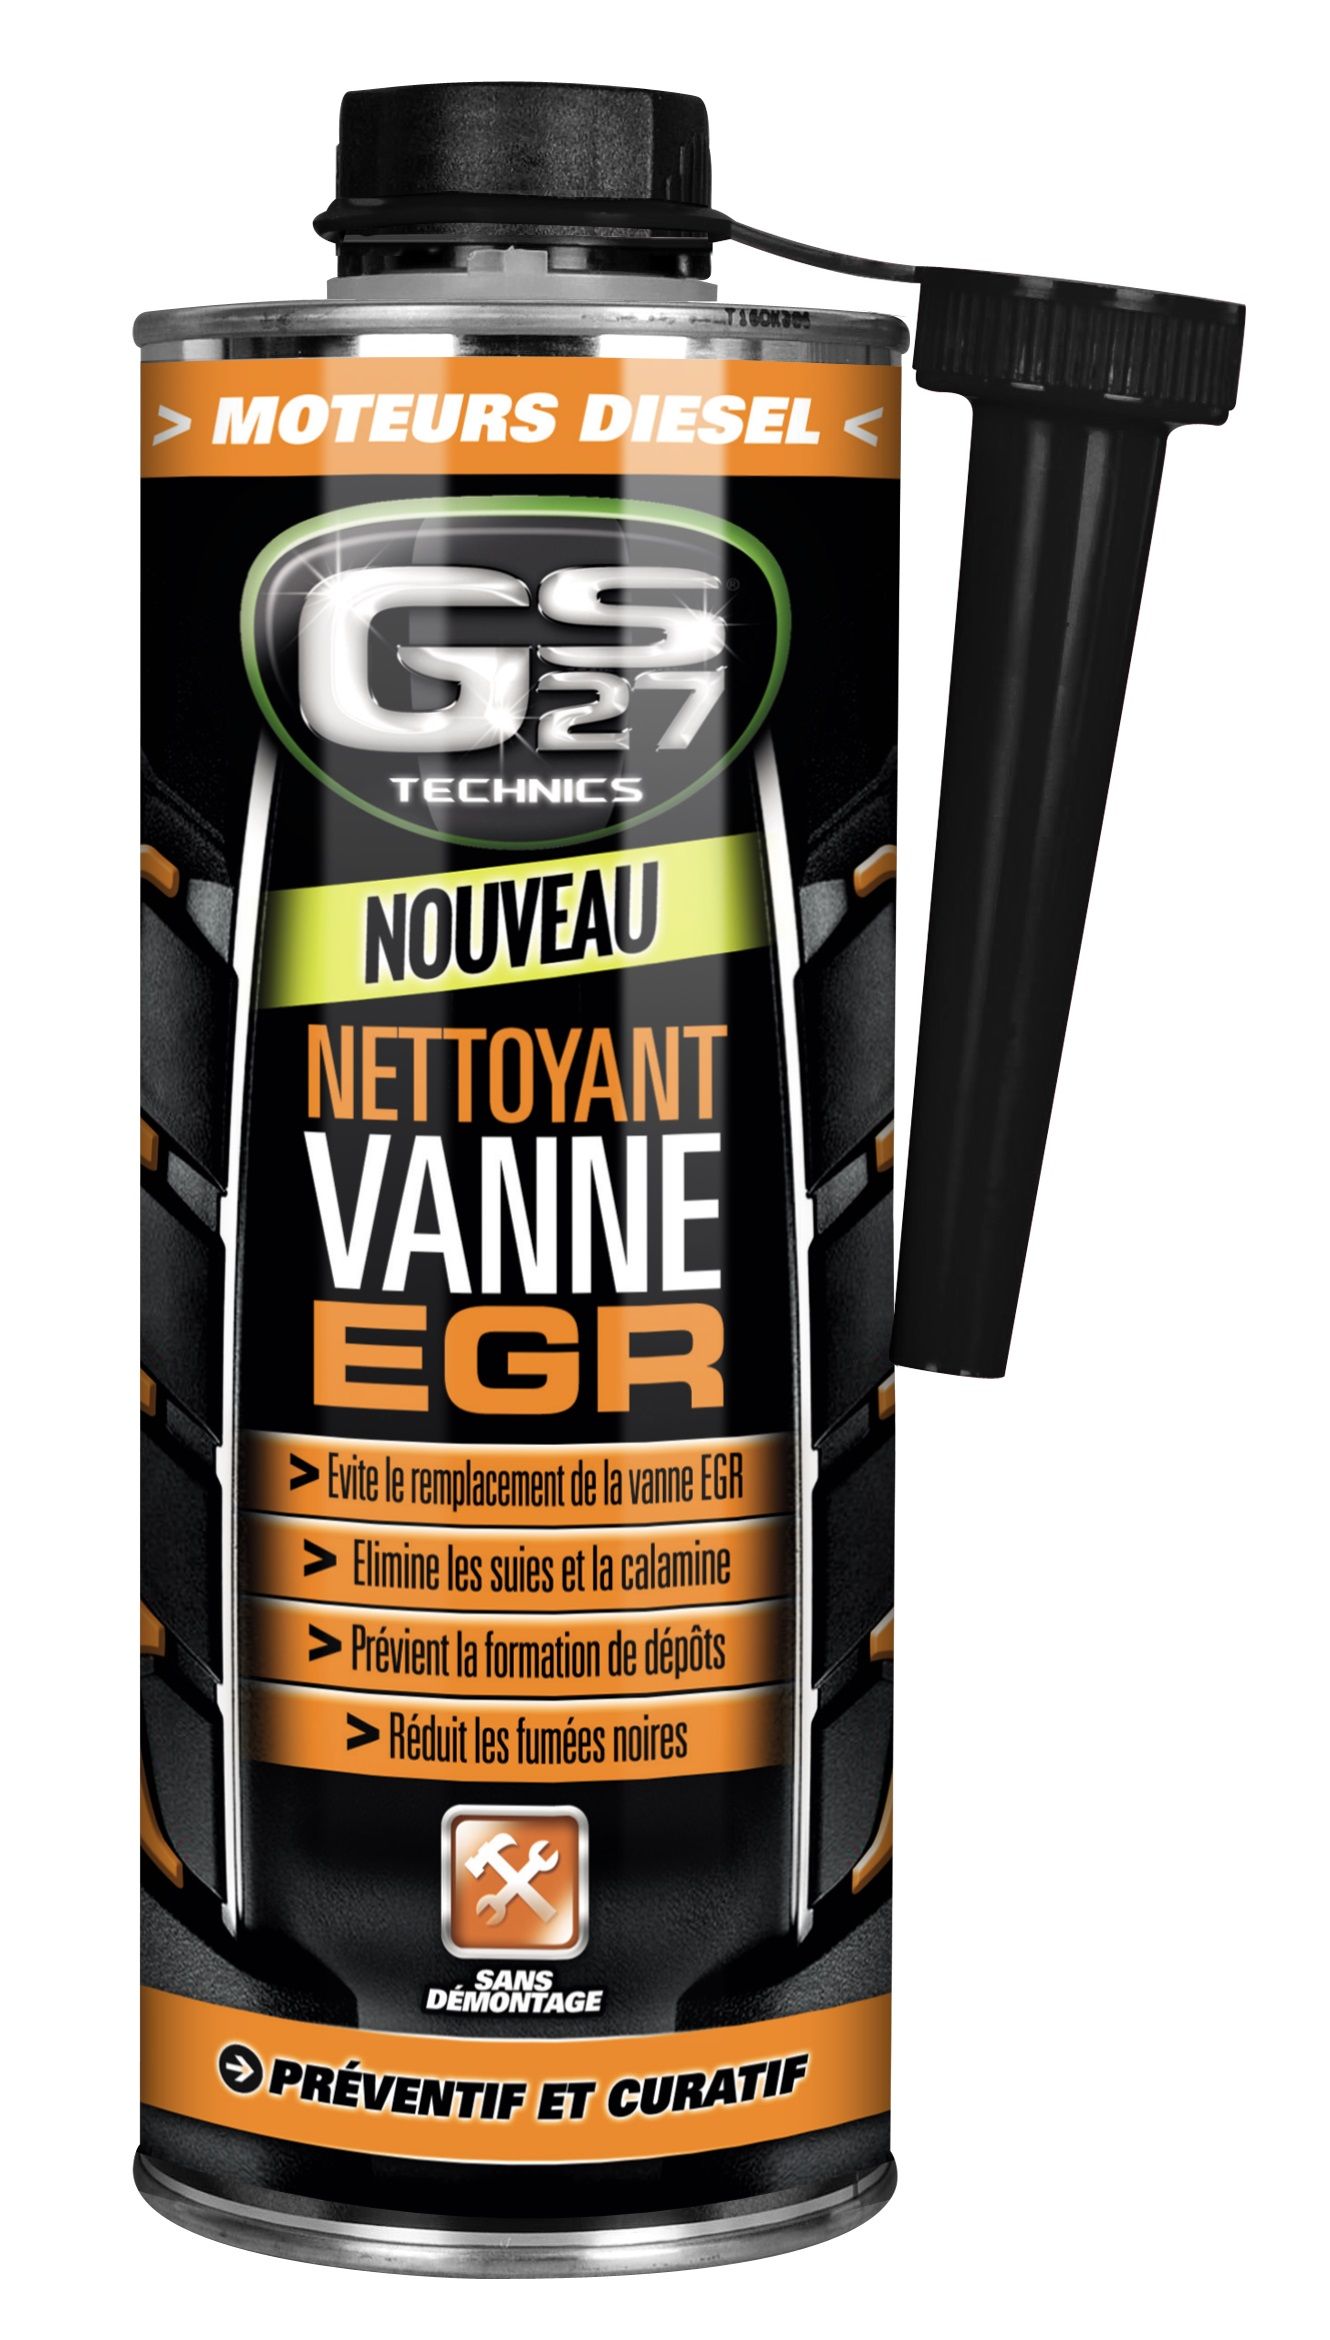 Nettoyant Vanne EGR 500ml – Additifs Moteurs diesel – Nettoyant moteur  action préventive et curative - GS27